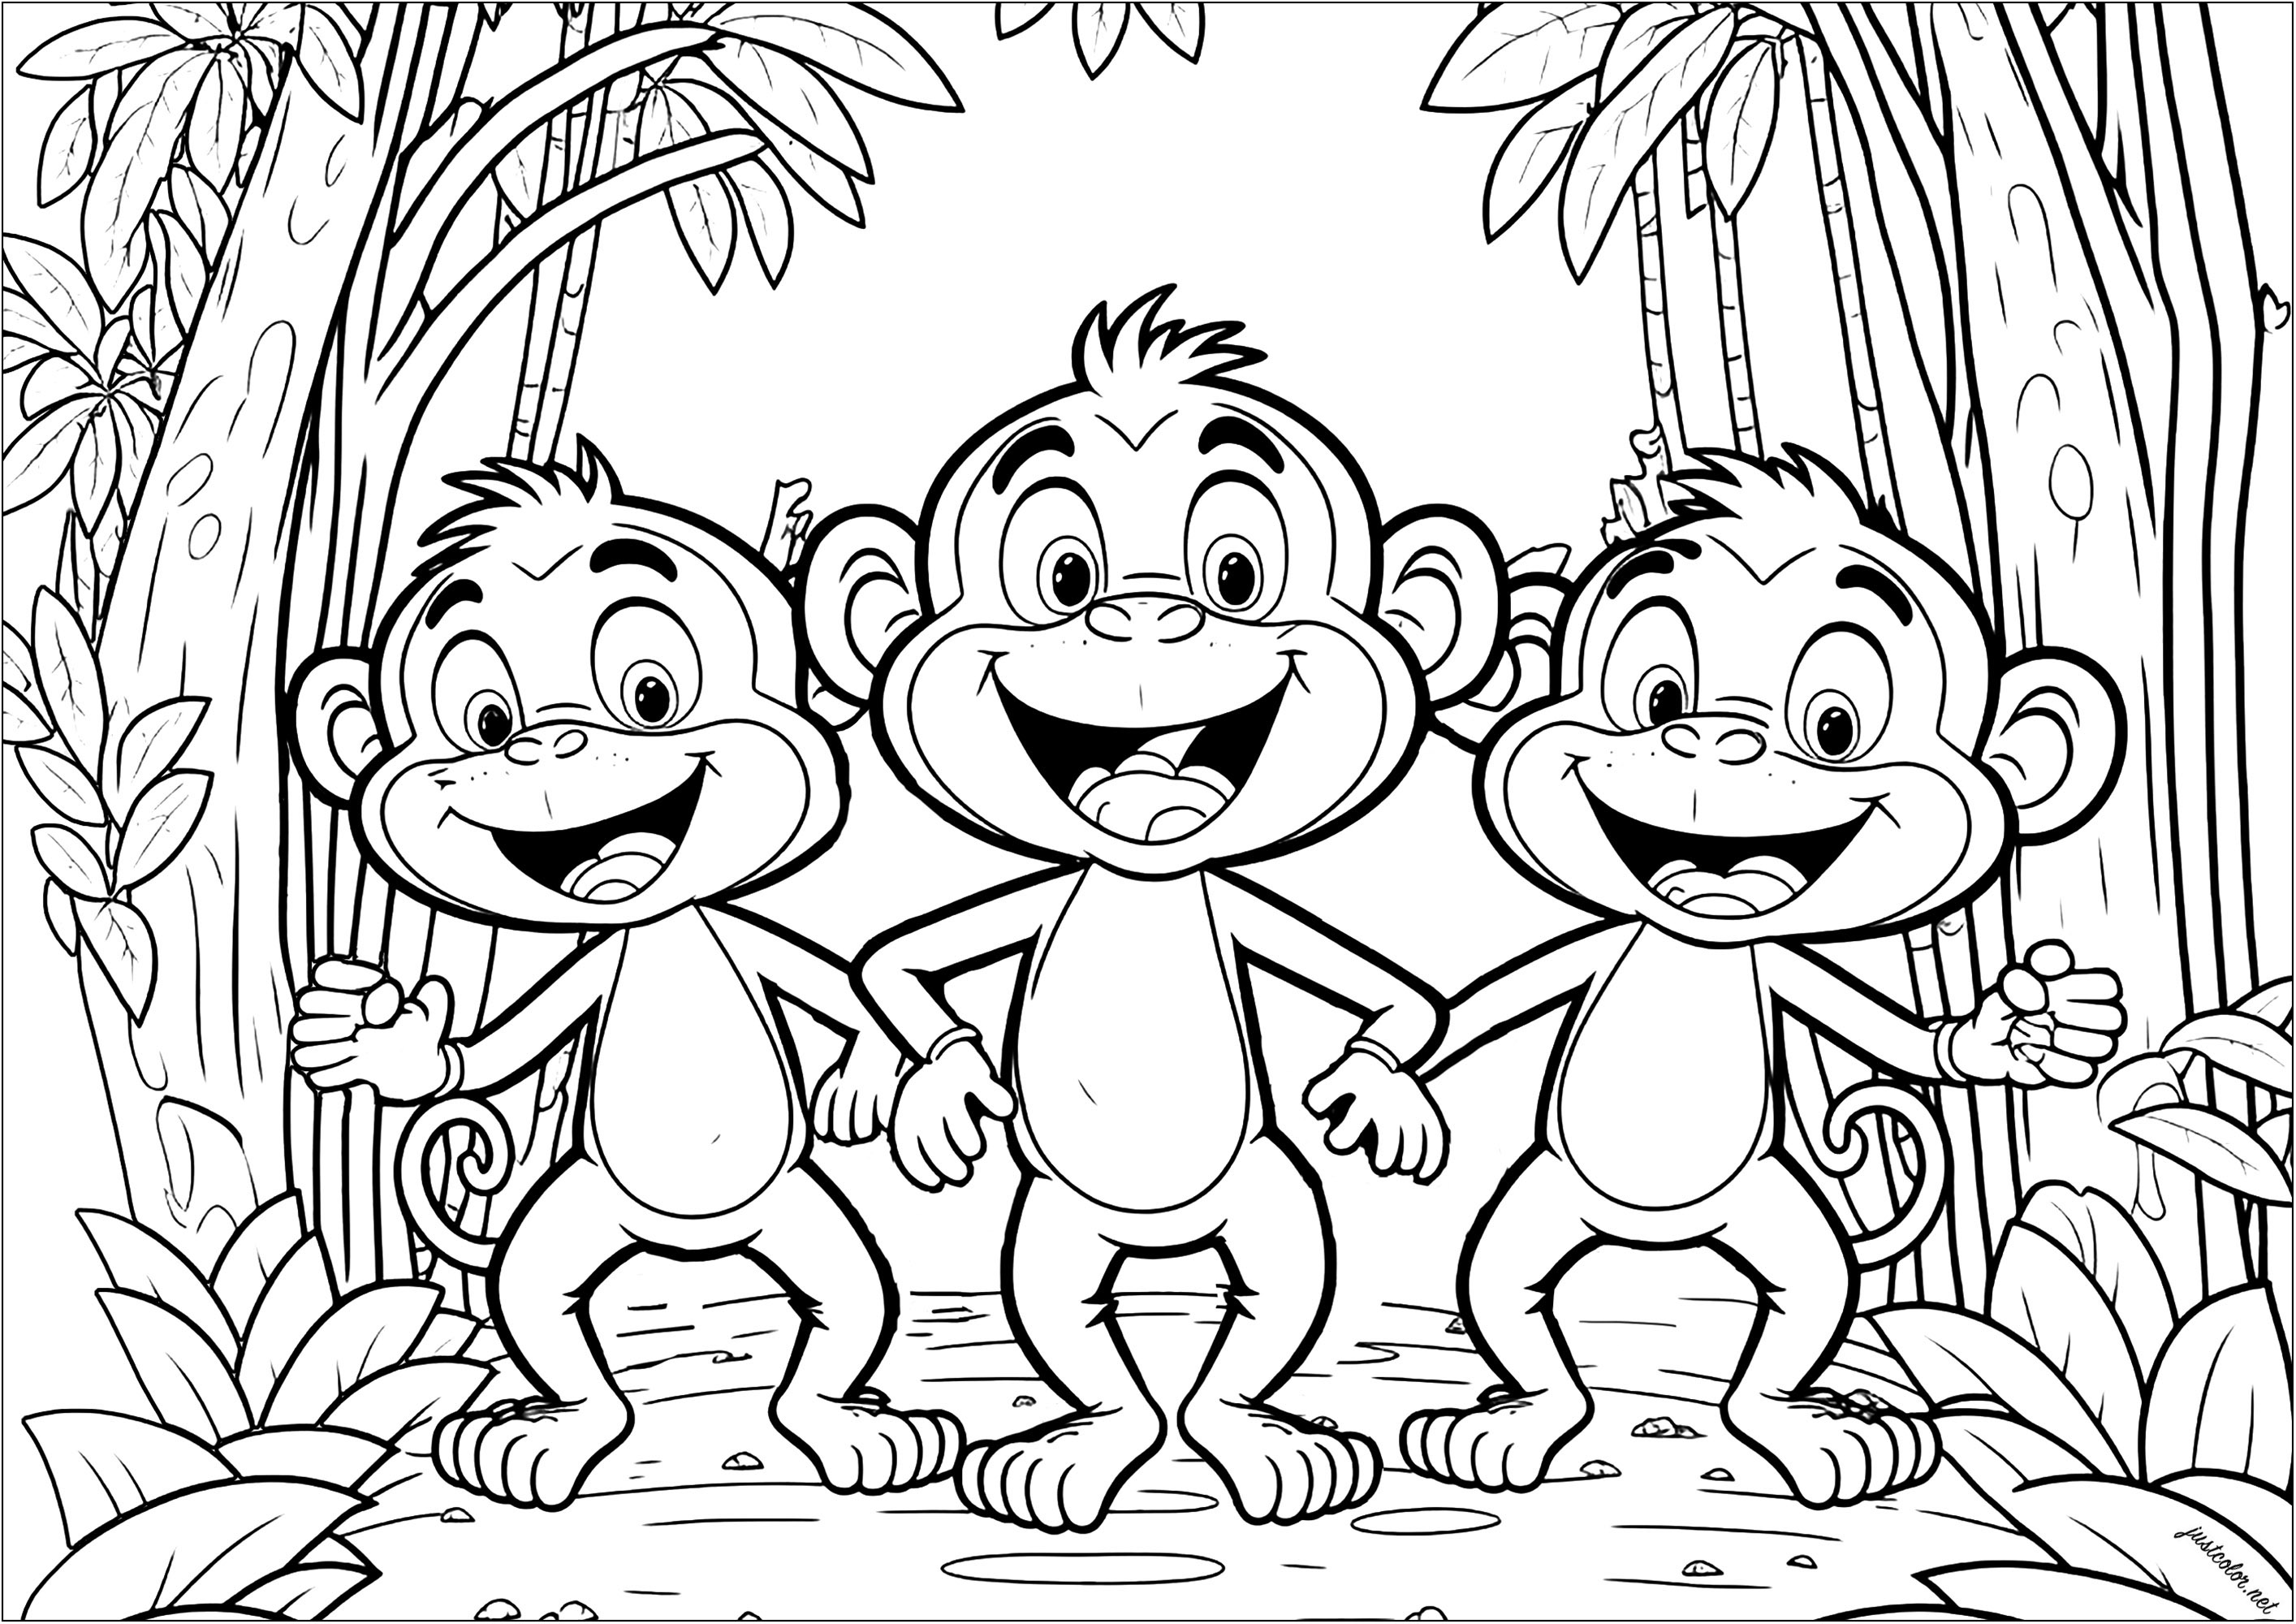 Tres divertidos monos para colorear. Estos primates tienen un aspecto muy infantil, pero la vegetación del fondo hace que el colorido sea bastante complejo.